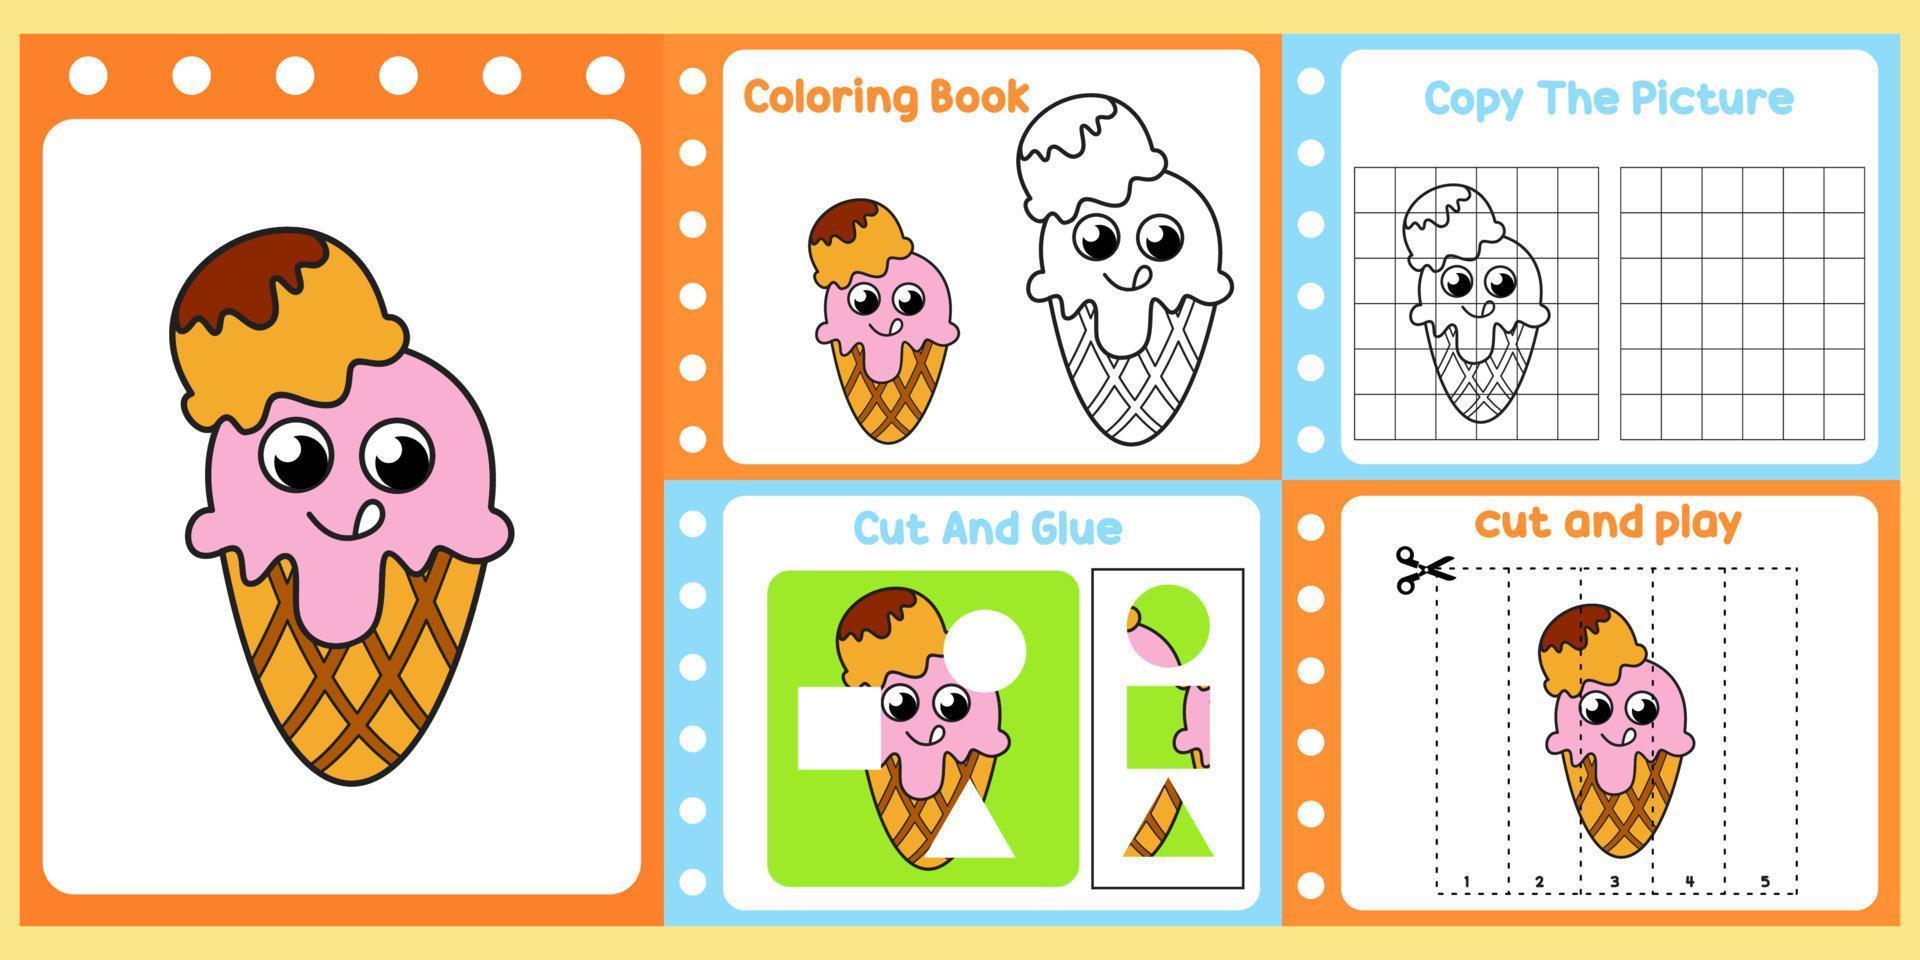 pack de feuilles de calcul pour les enfants avec vecteur de crème glacée. livre d'étude pour enfants